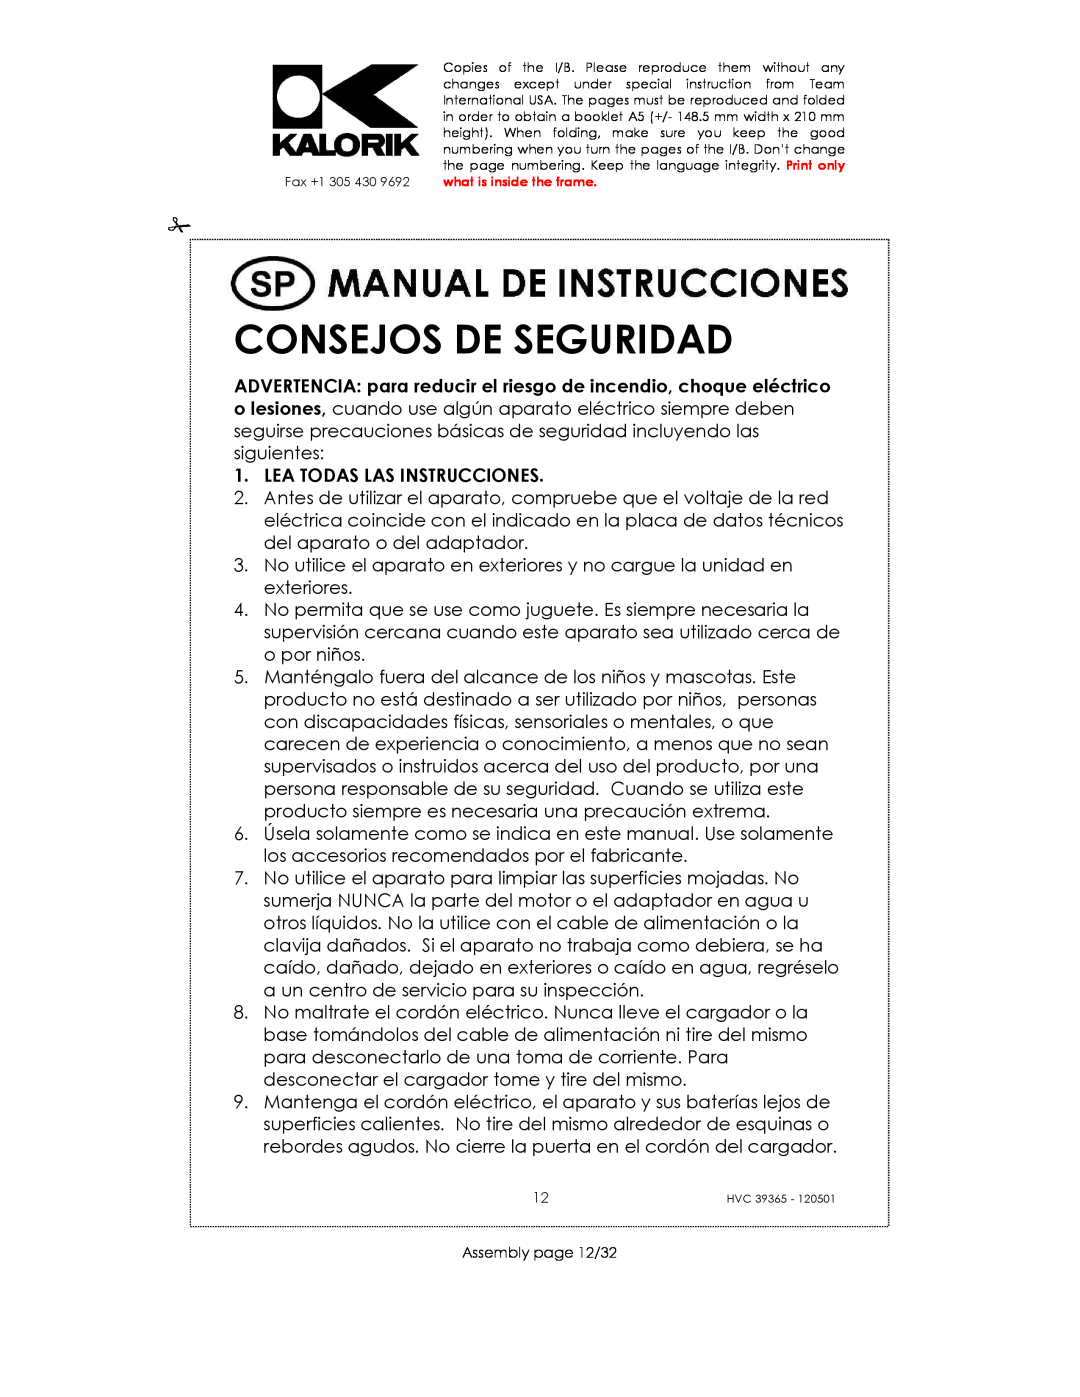 Kalorik HVC 39365 manual Consejos De Seguridad, Lea Todas Las Instrucciones 